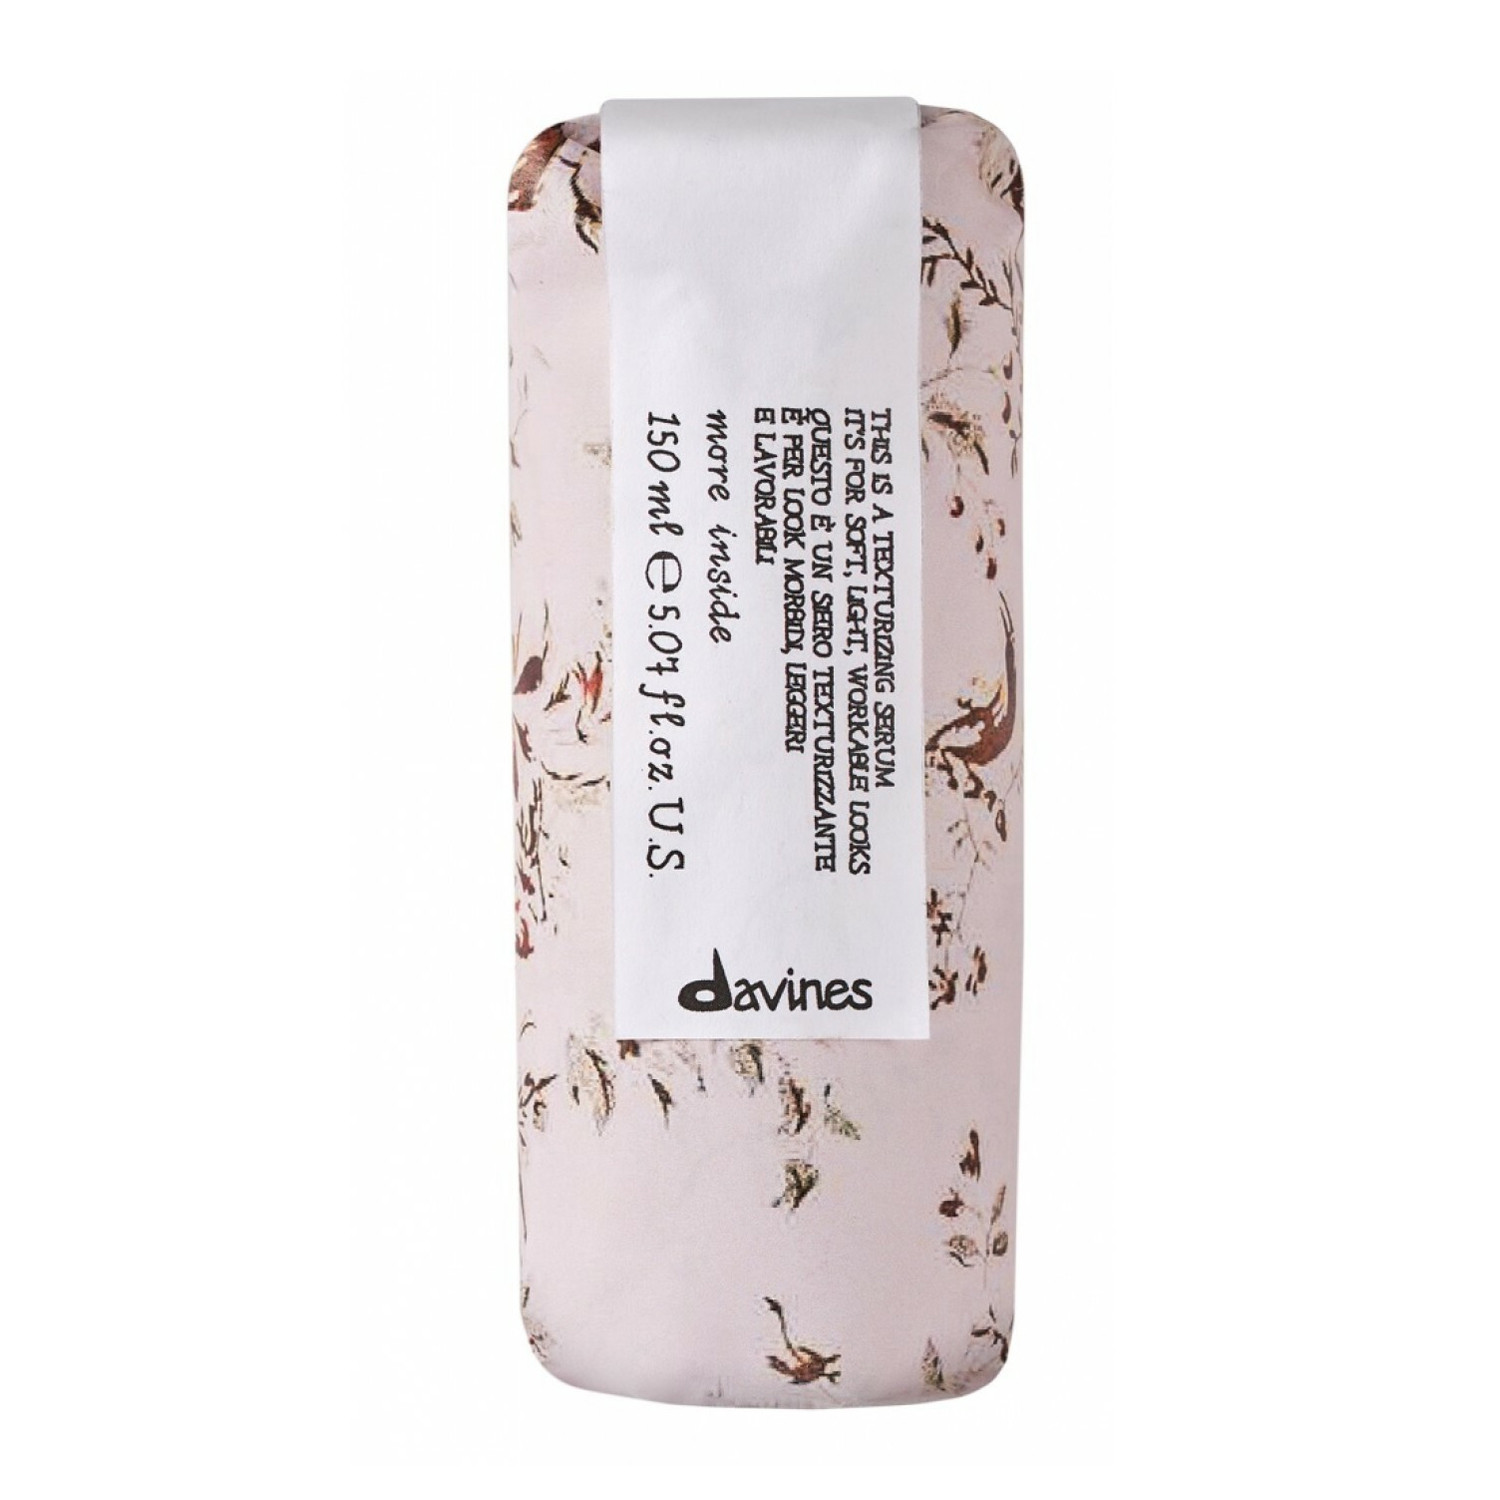 Davines More Inside Texturizing Serum Текстурирующая сыворотка для блеска и мягкости волос